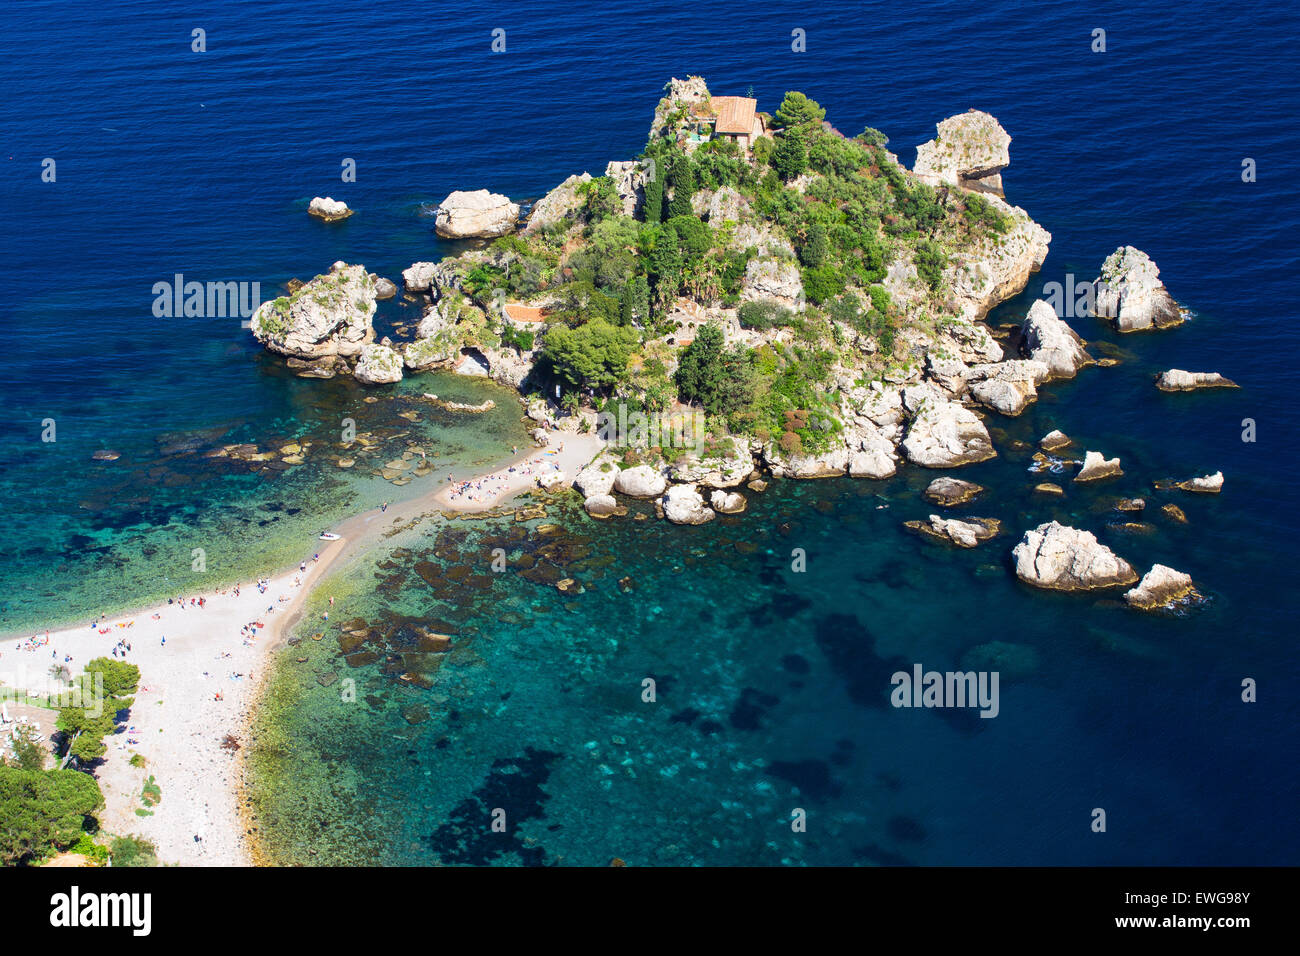 La baia di Taormina. Isola Bella. Regione Sicilia. L'Italia. Foto Stock